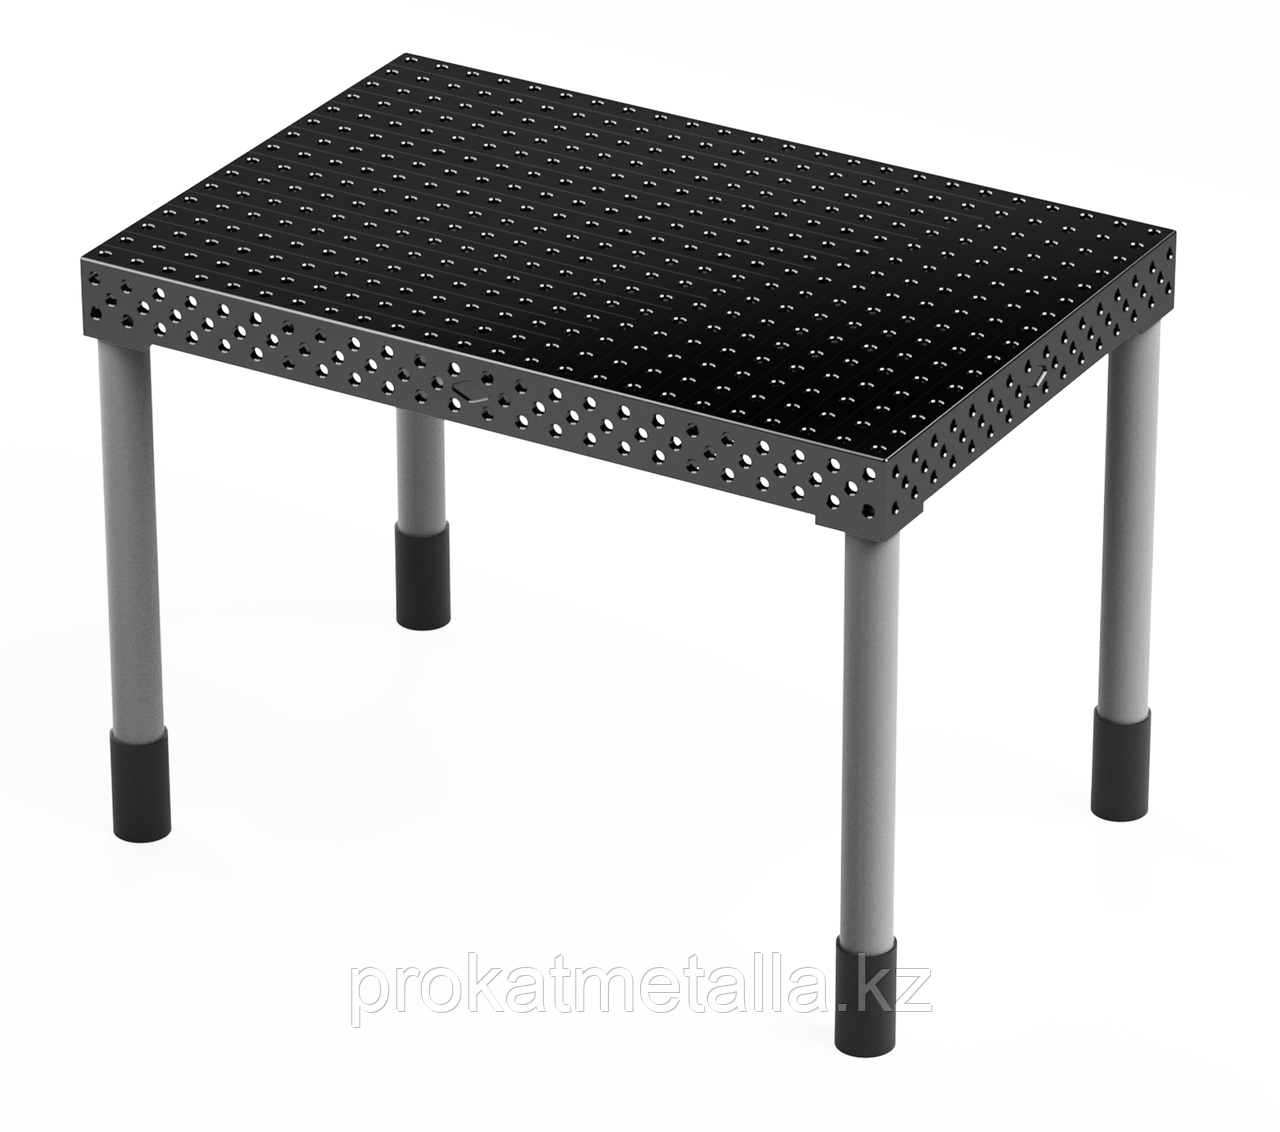 Сварочный стол "Лайт" 1500х1000х150 (шаг 100 мм)